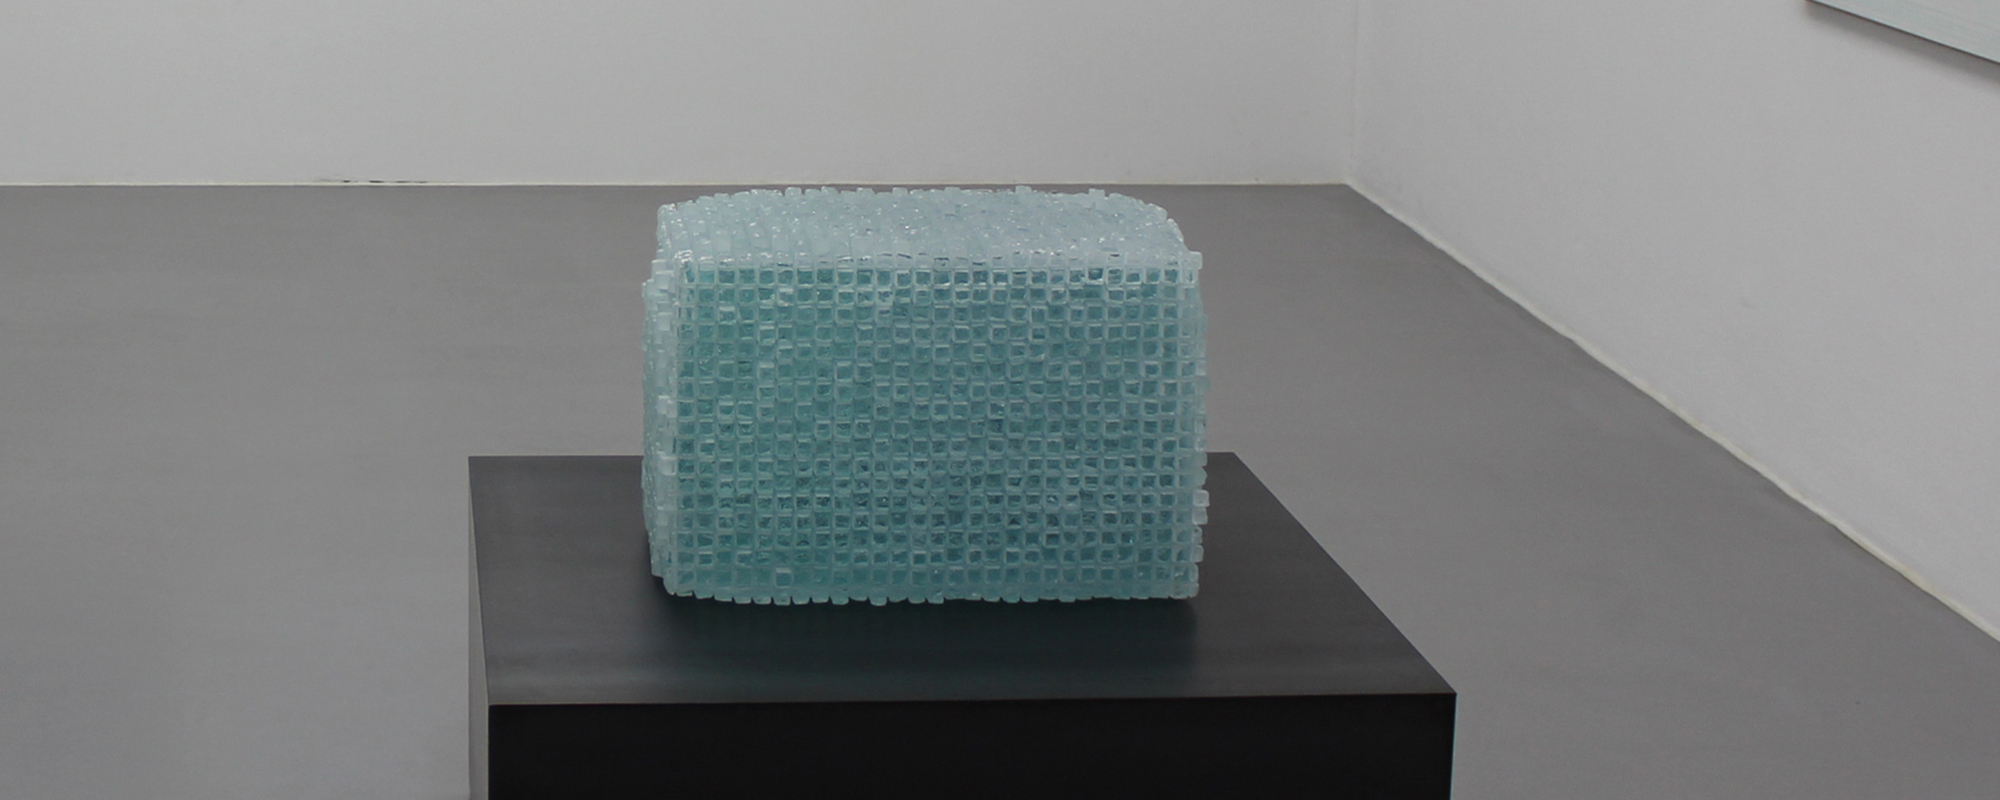 Manna – 2019, Verbundglasblock, gesägt, gemeißelt, gebrochen, ca. 160 kg, 37 x 55 x 37 cm